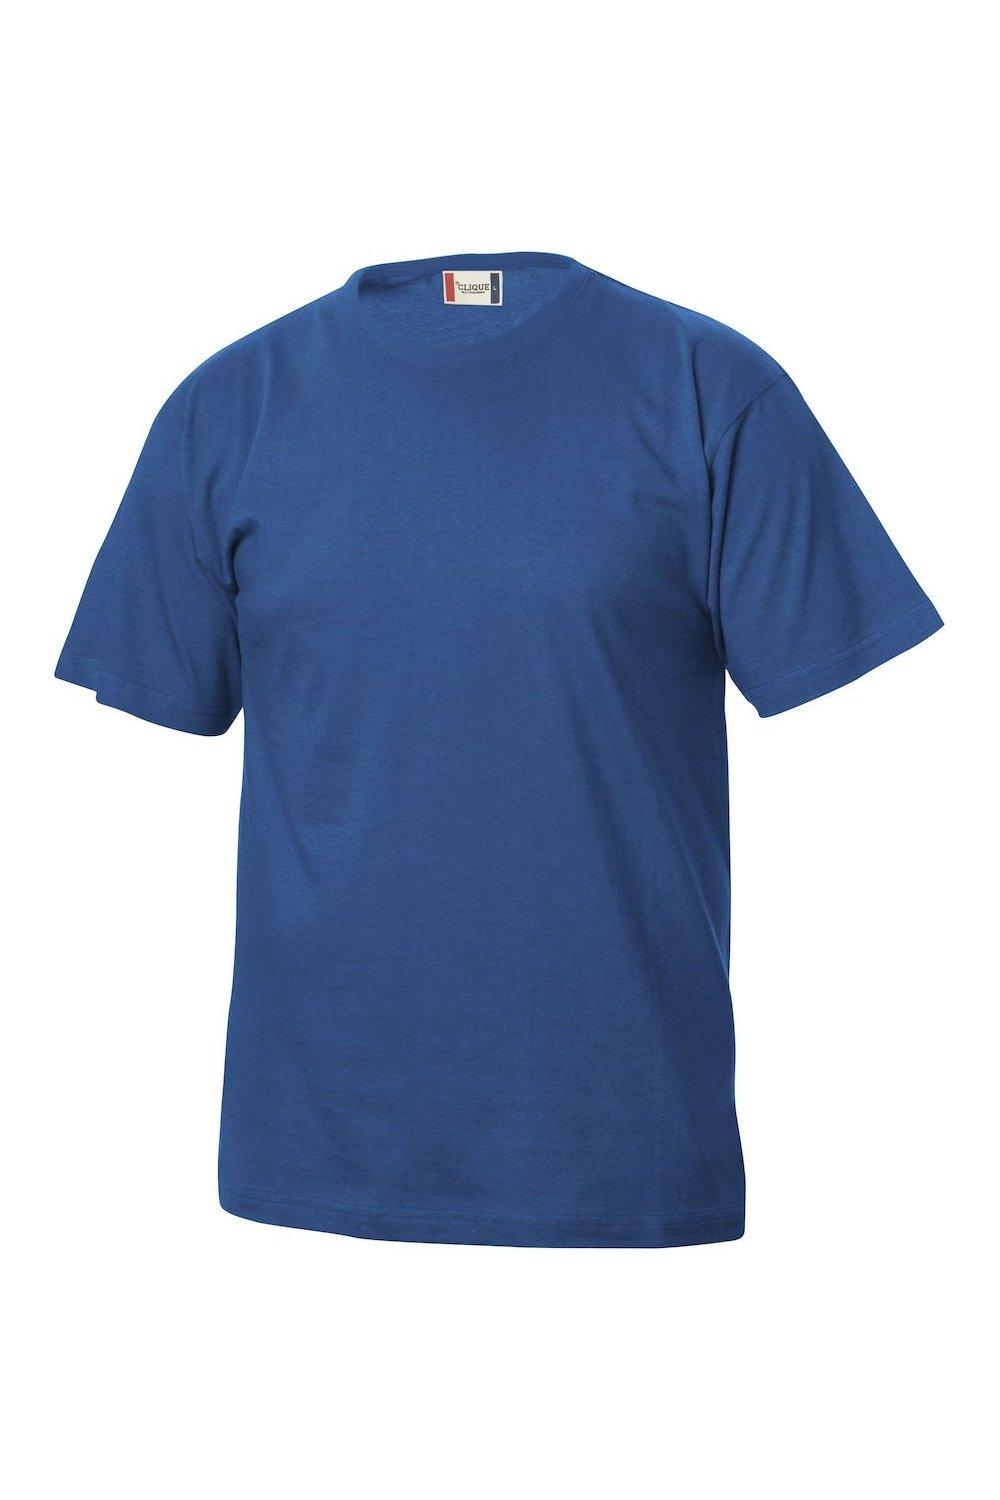 Базовая футболка Clique, синий базовая спортивная сумка clique синий